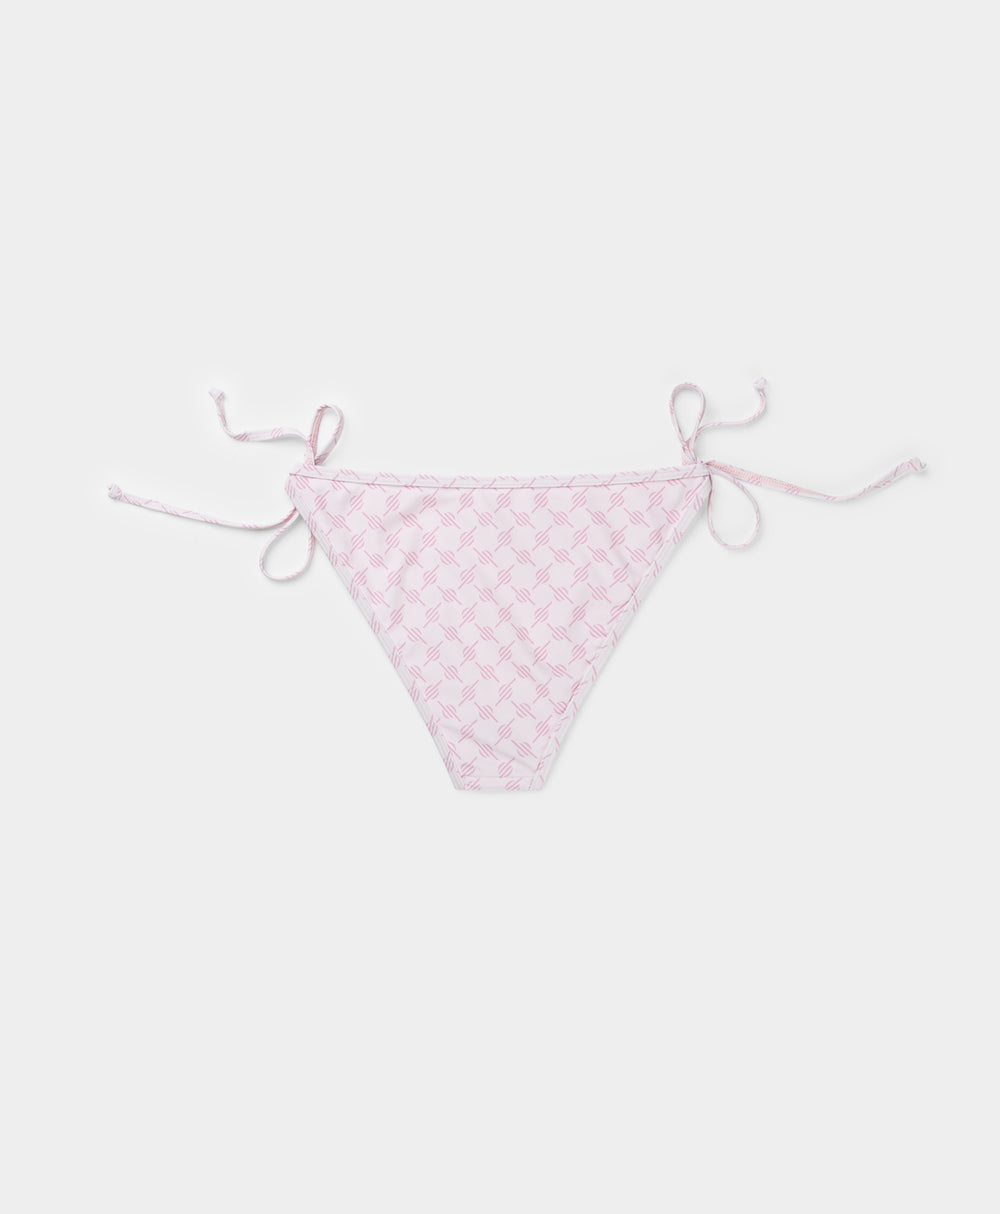 DP - Ice Pink Reya Monogram Bikini Bottom - Packshot - Rear